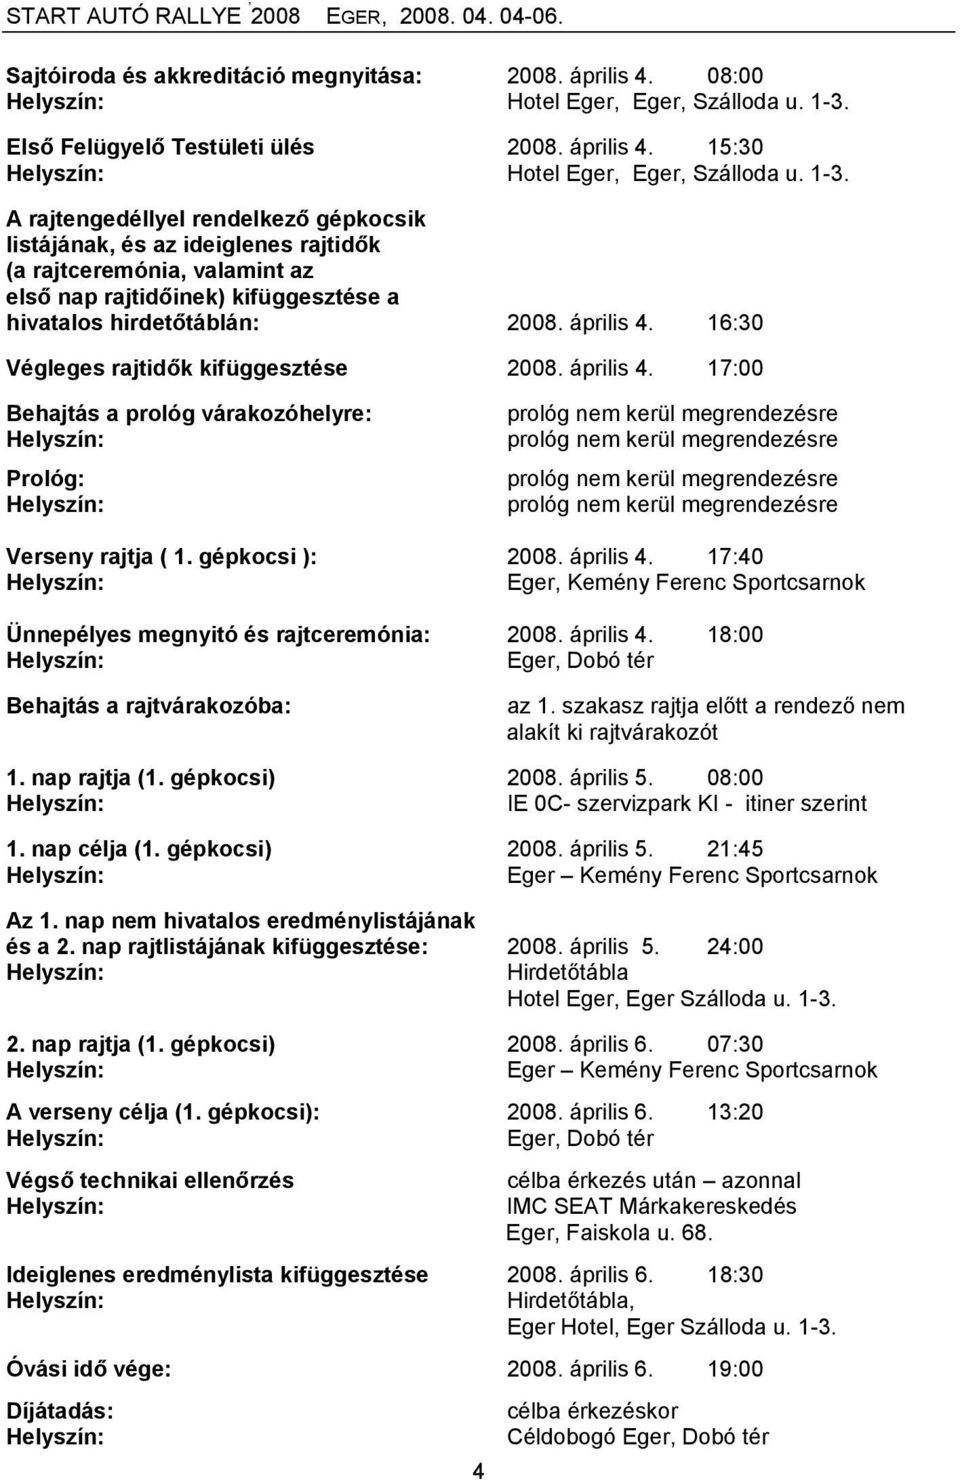 A rajtengedéllyel rendelkező gépkocsik listájának, és az ideiglenes rajtidők (a rajtceremónia, valamint az első nap rajtidőinek) kifüggesztése a hivatalos hirdetőtáblán: 2008. április 4.